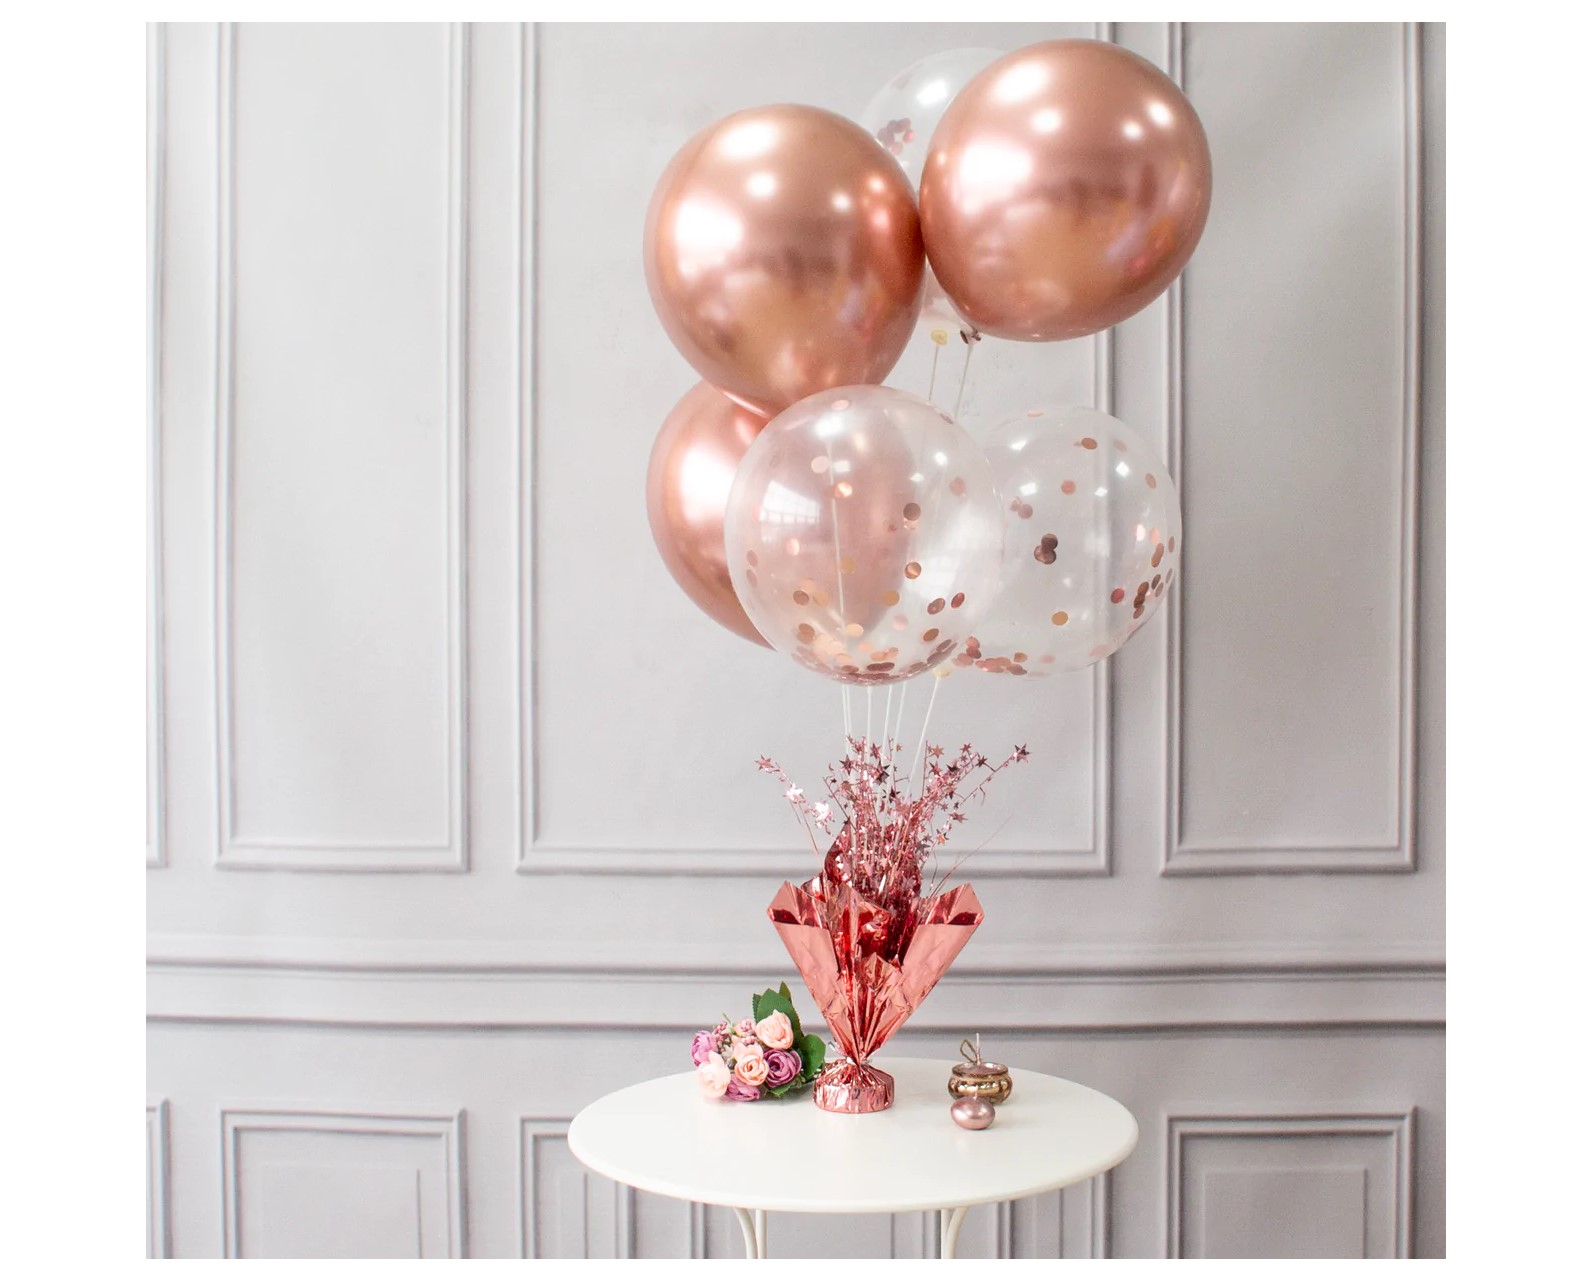 Σύνθεση για μπαλόνια για την διακόσμηση στο τραπέζι σε ροζ χρυσό χρώμα